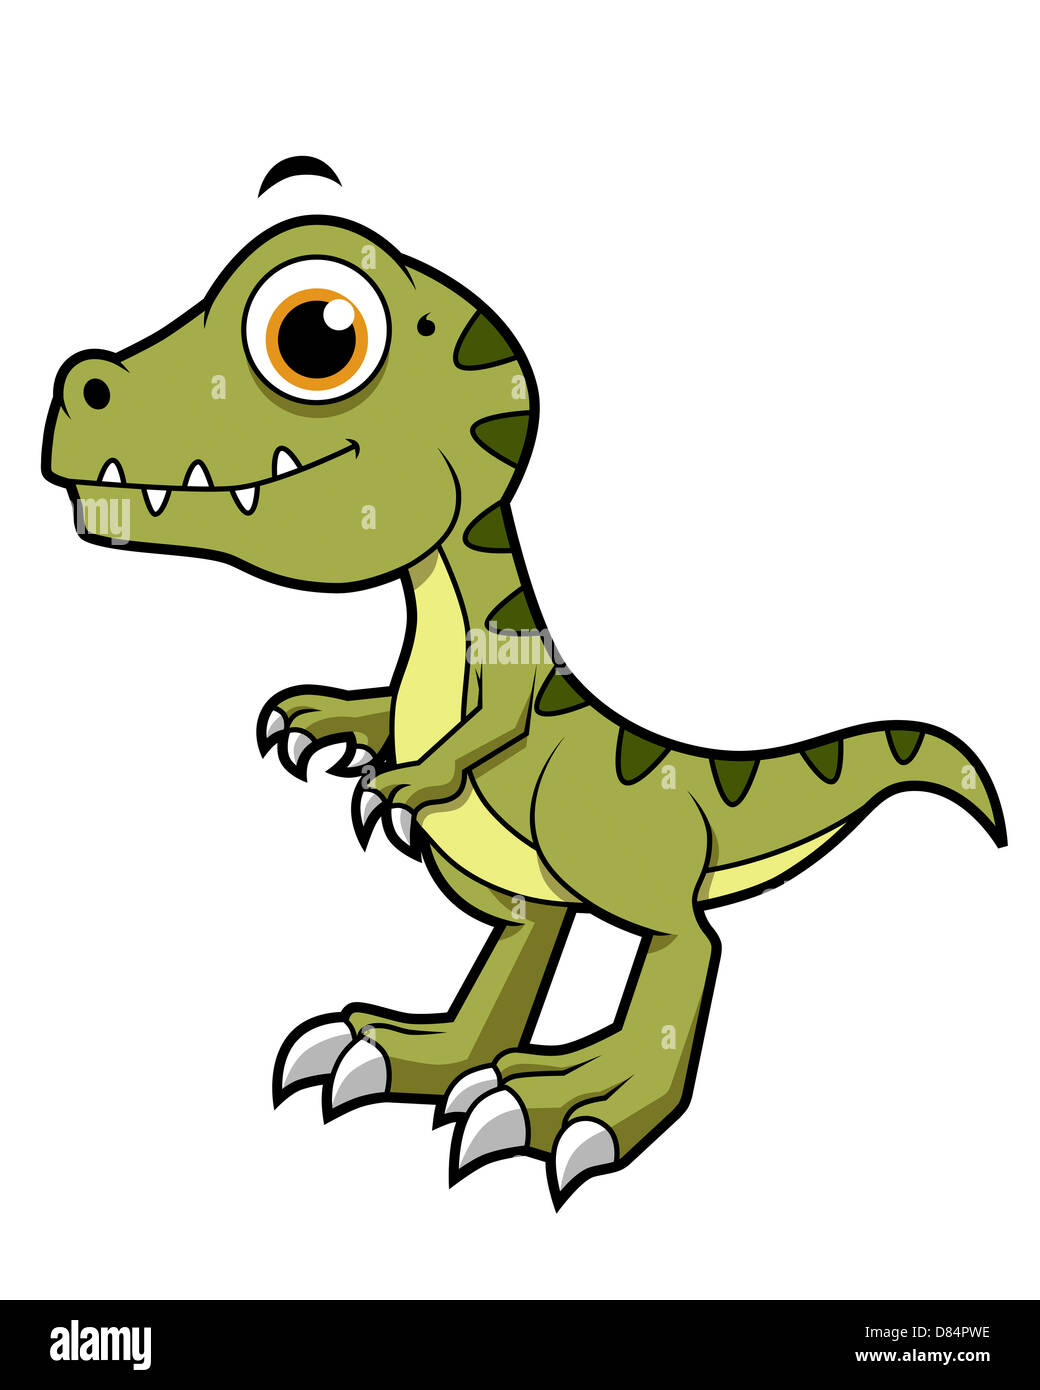 Cute illustration of a Tyrannosaurus Rex. Stock Photo